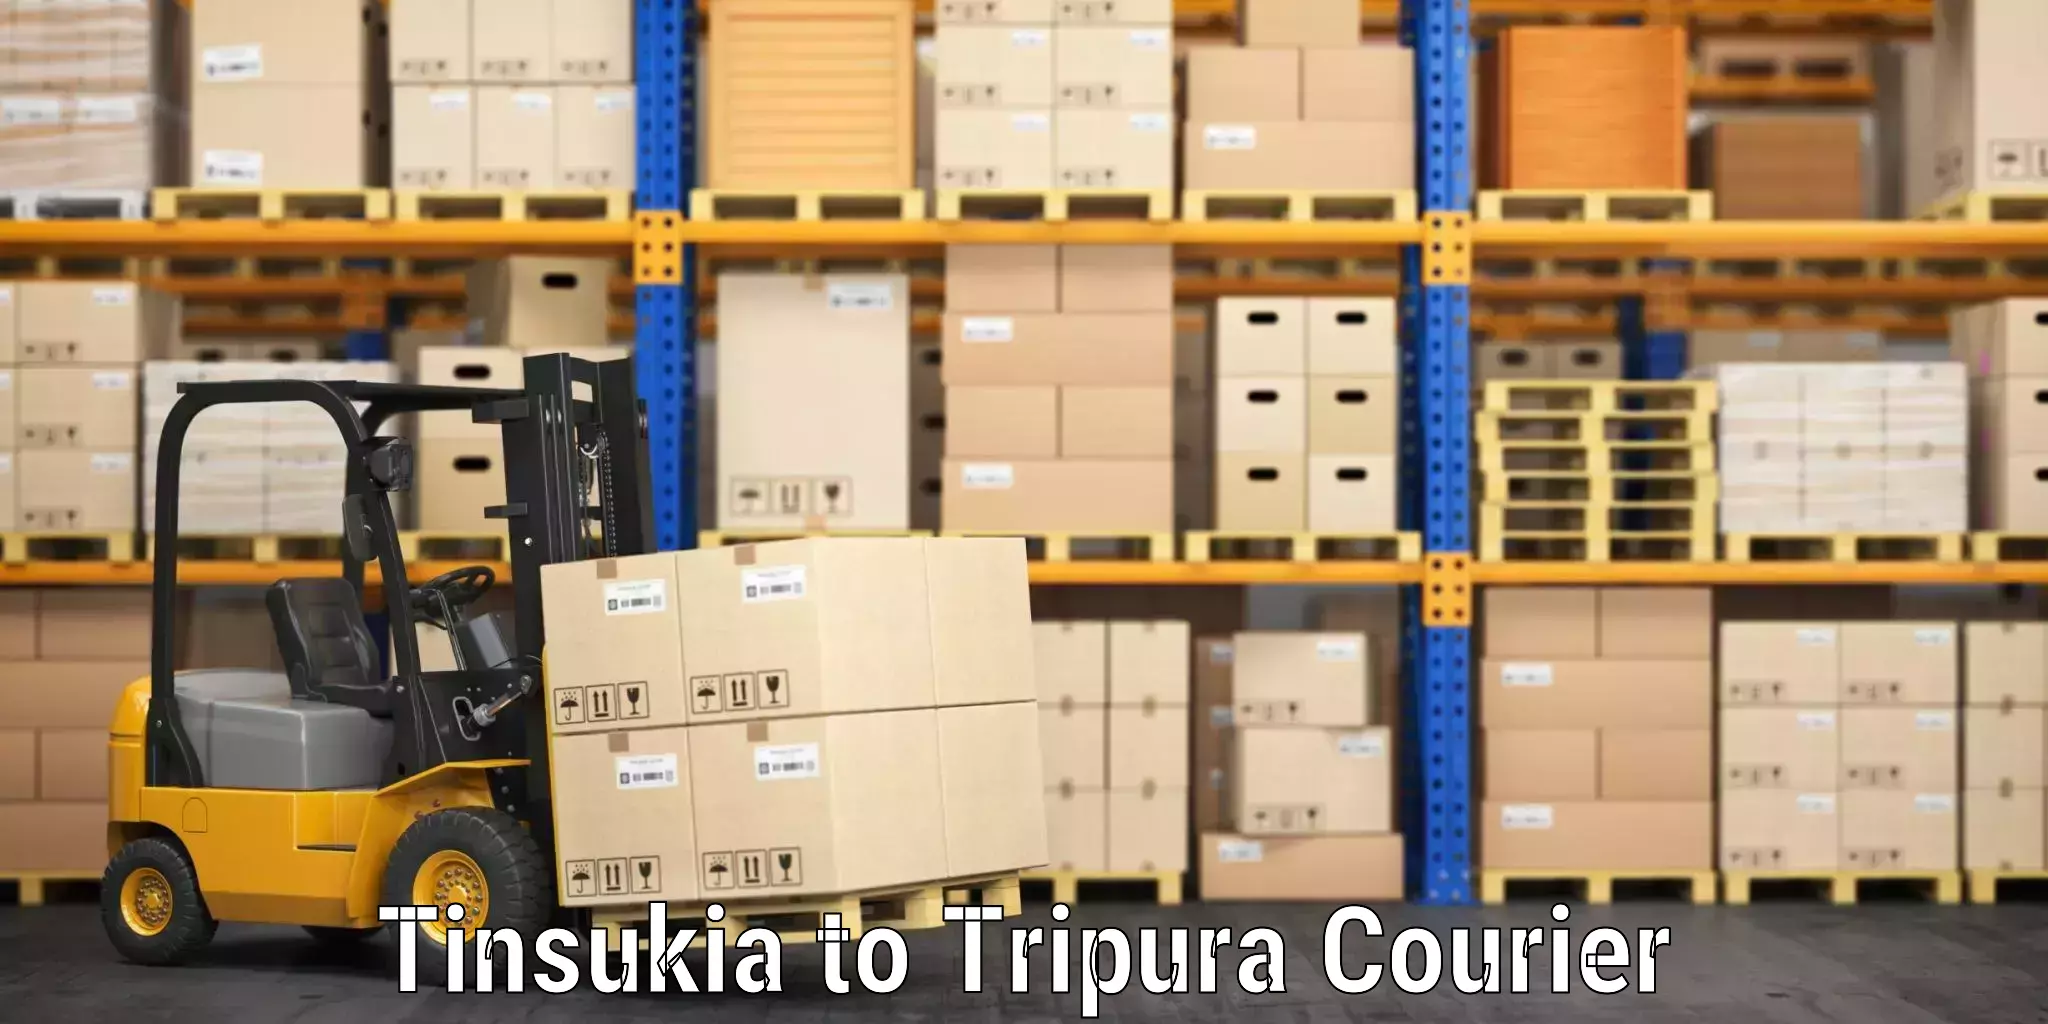 Baggage courier logistics Tinsukia to Agartala